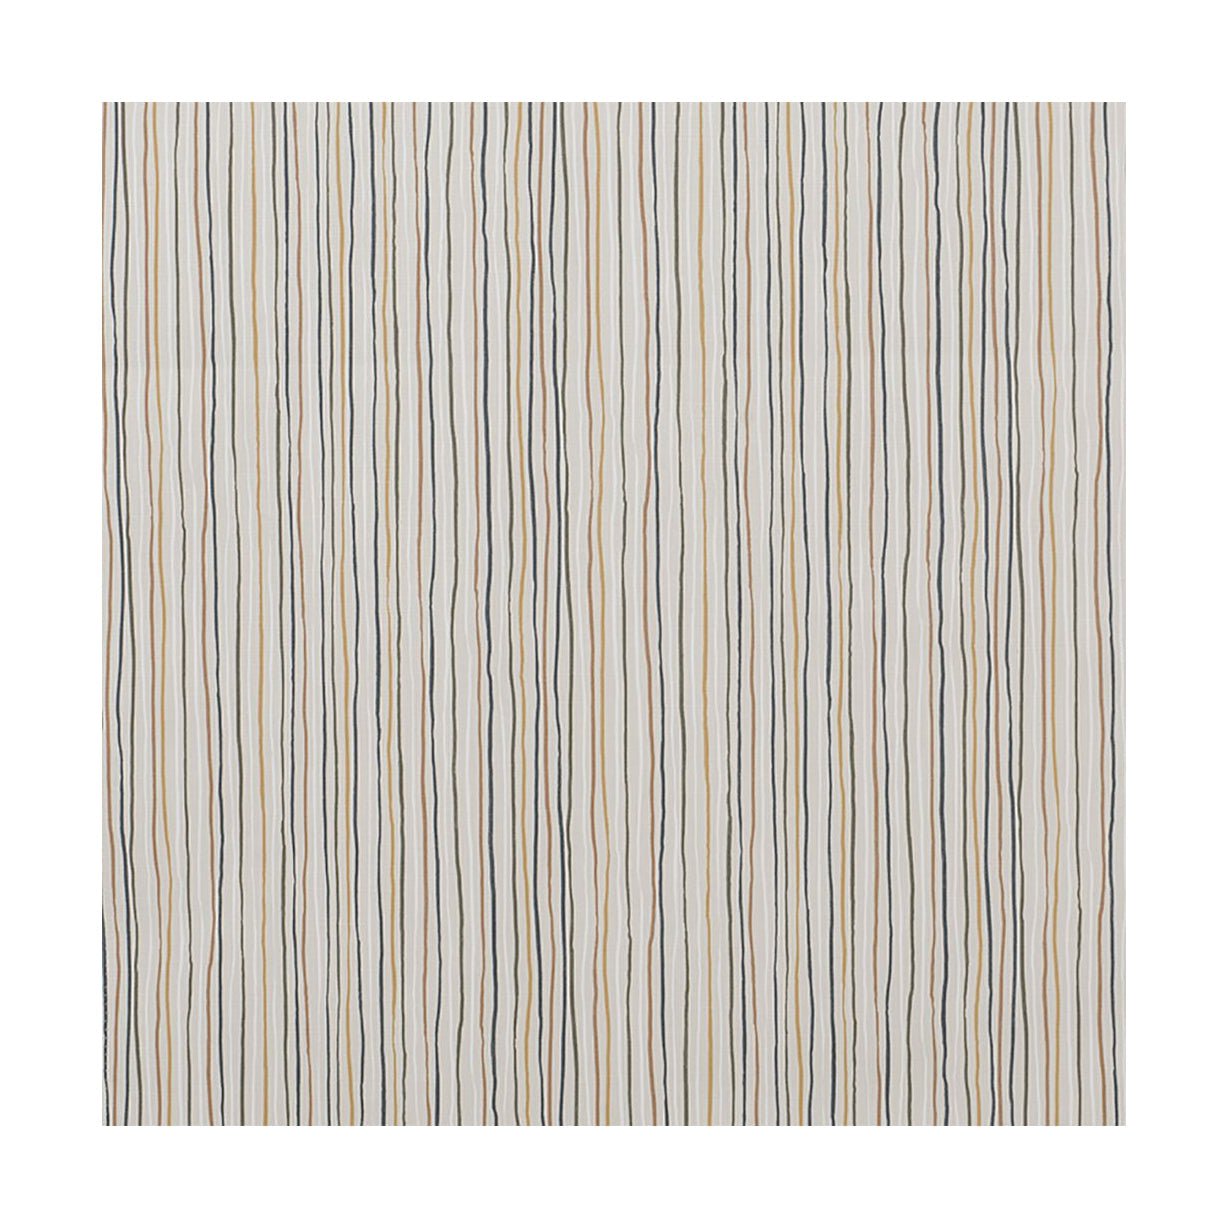 Szerokość tkaniny Spira Stripe 150 cm (cena za metr), wielokolorowe